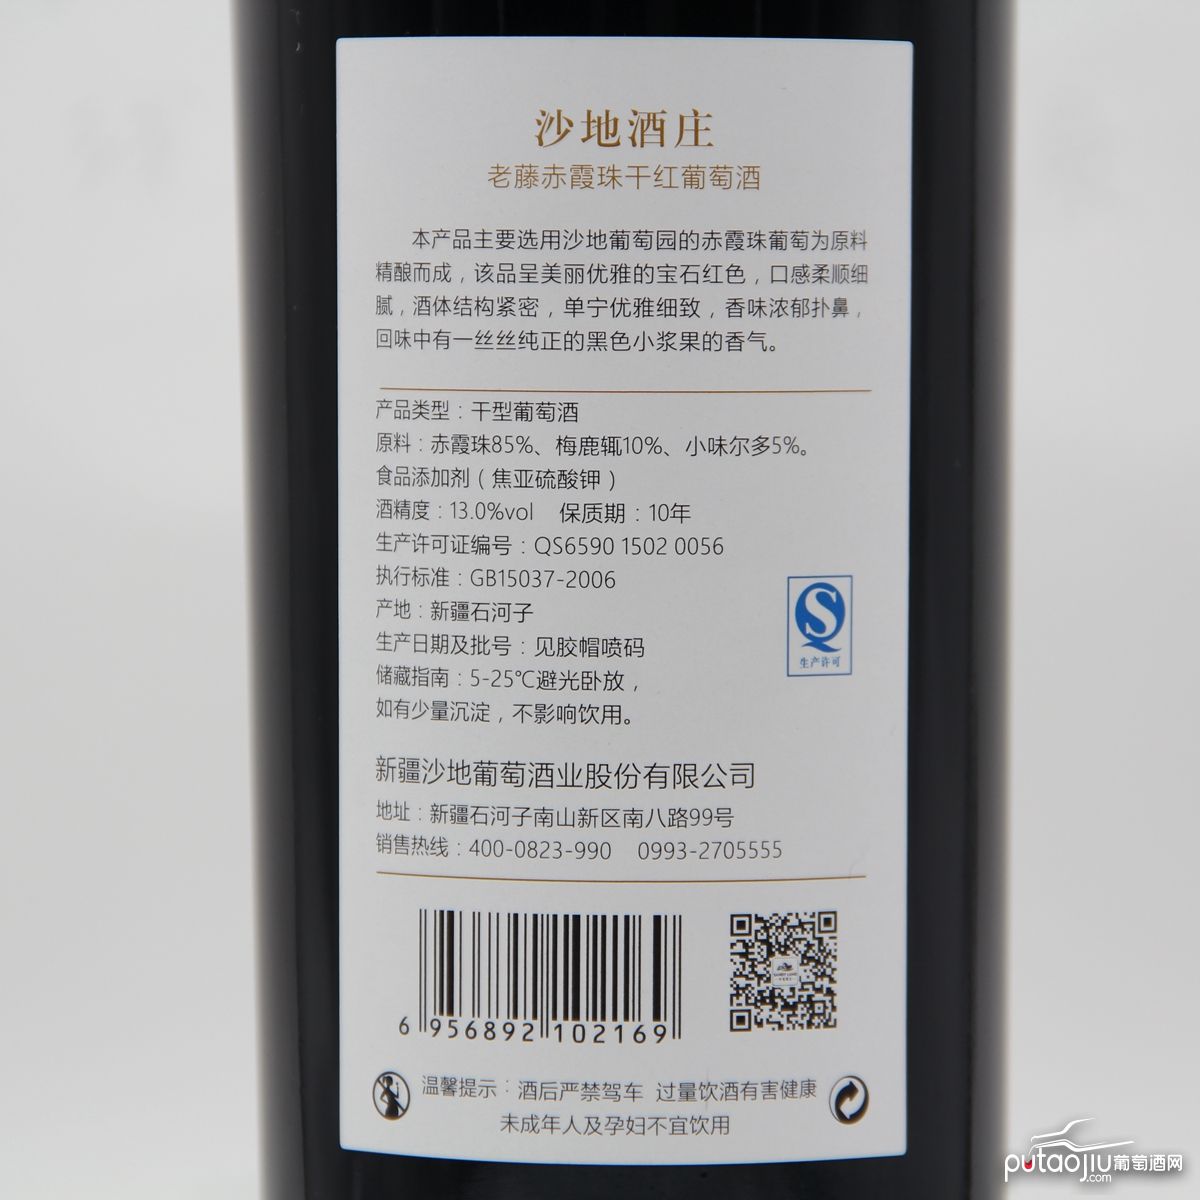 中国新疆产区沙地酒庄 赤霞珠老藤干红葡萄酒